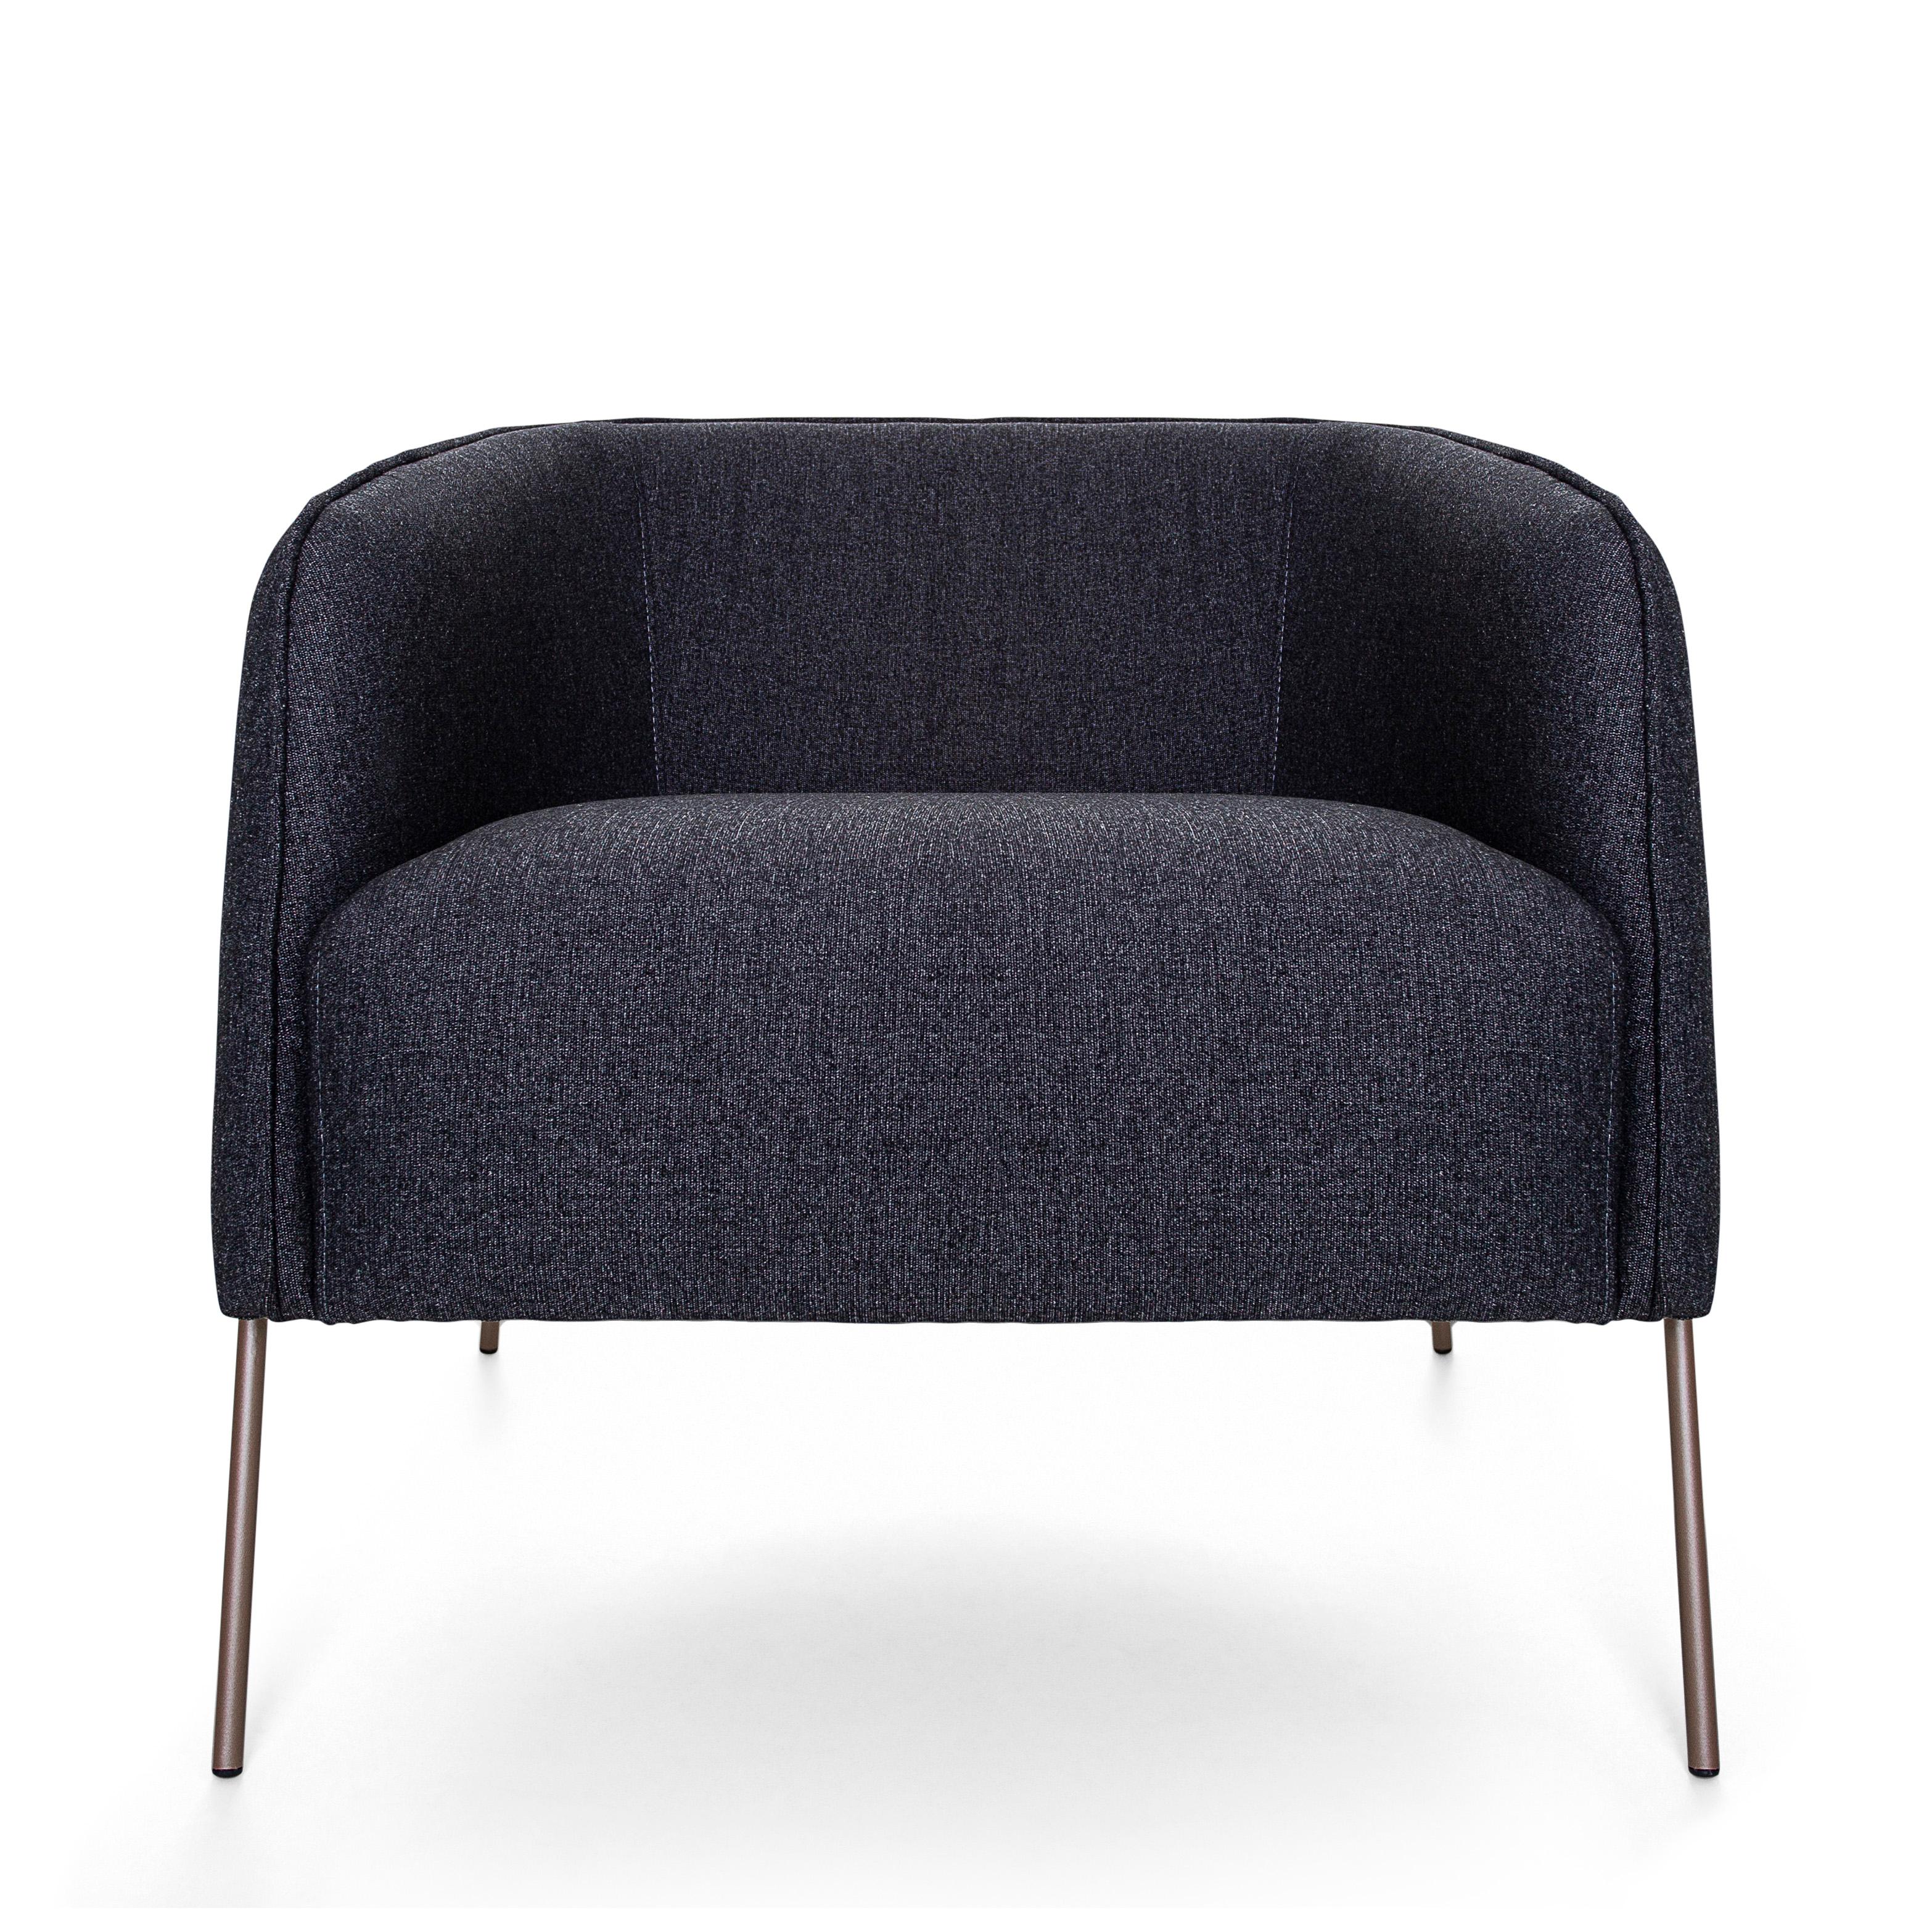 Notre équipe créative d'Uultis a créé cet incroyable fauteuil rembourré, le meuble idéal pour vous offrir le confort et l'adaptation parfaite à une variété d'environnements, y compris les salons, les bureaux et les chambres à coucher, pour ajouter